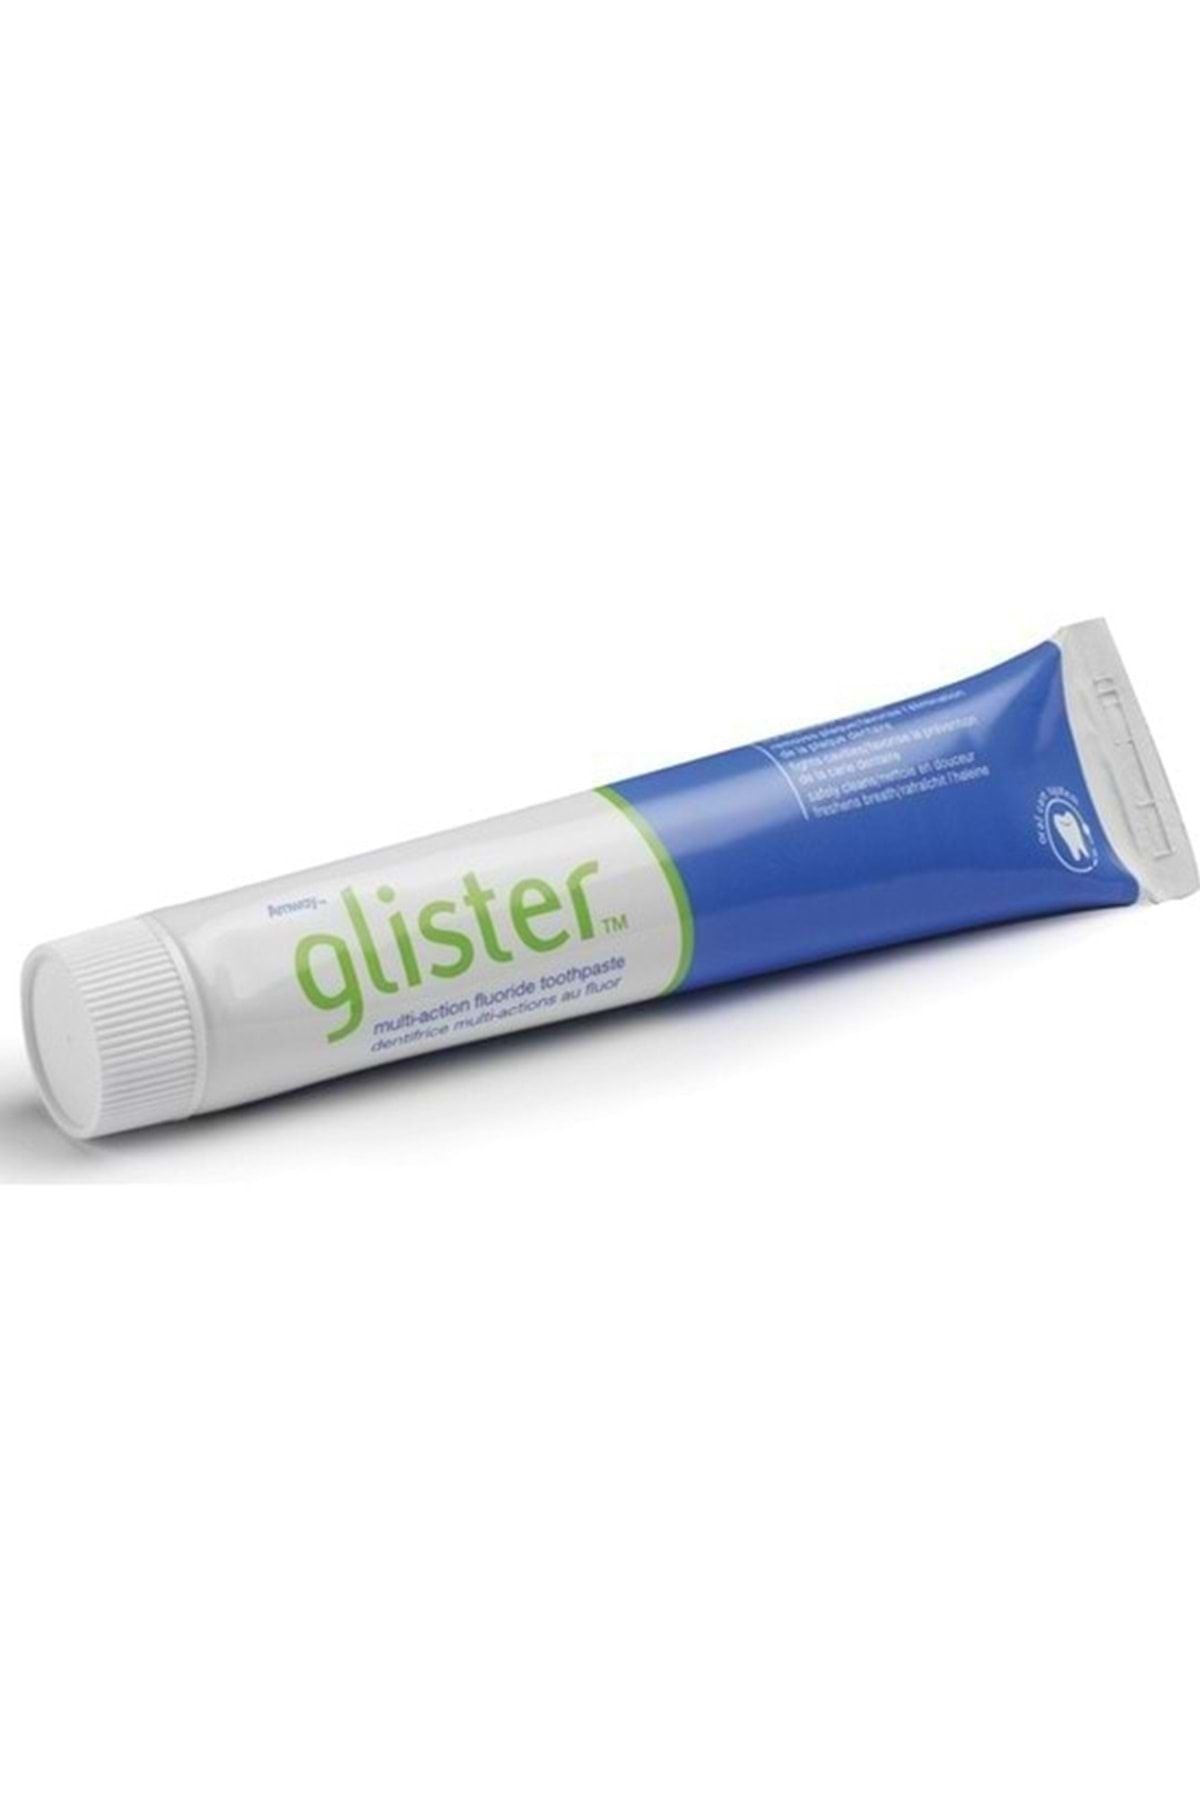 Amway Glister Seyahat Tipi Diş Macunu 50 ml Görseldeki Ürünler Gönderiliyor